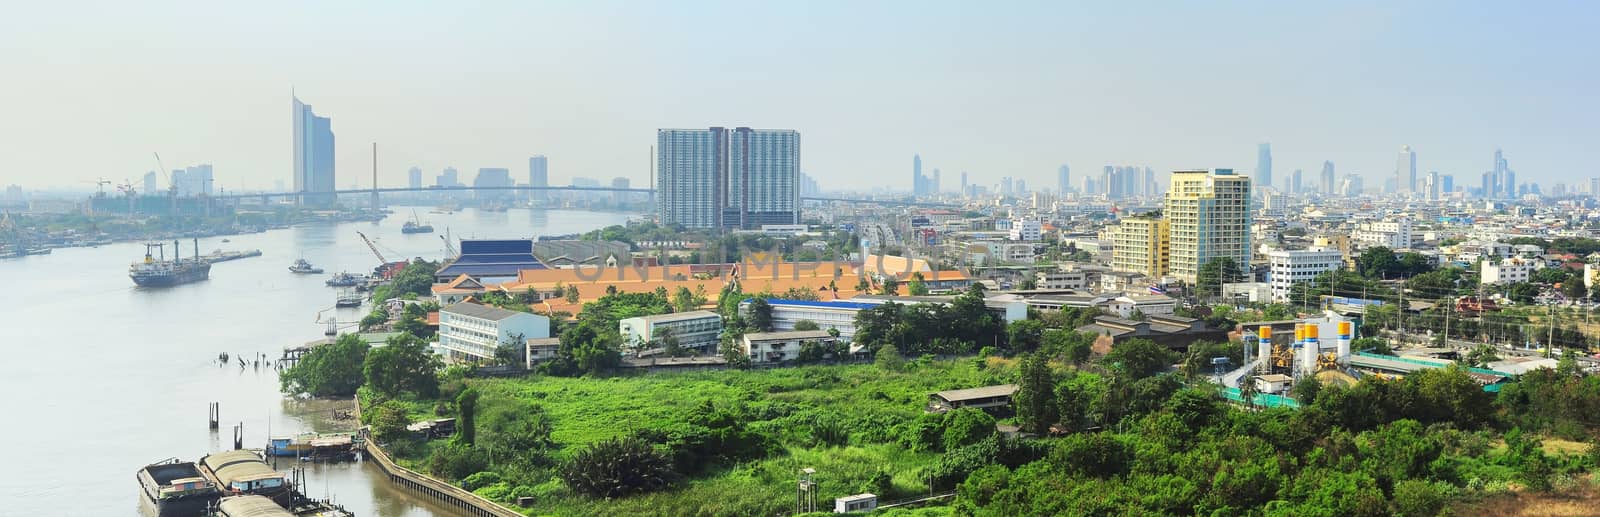 Bangkok skyline by joyfull